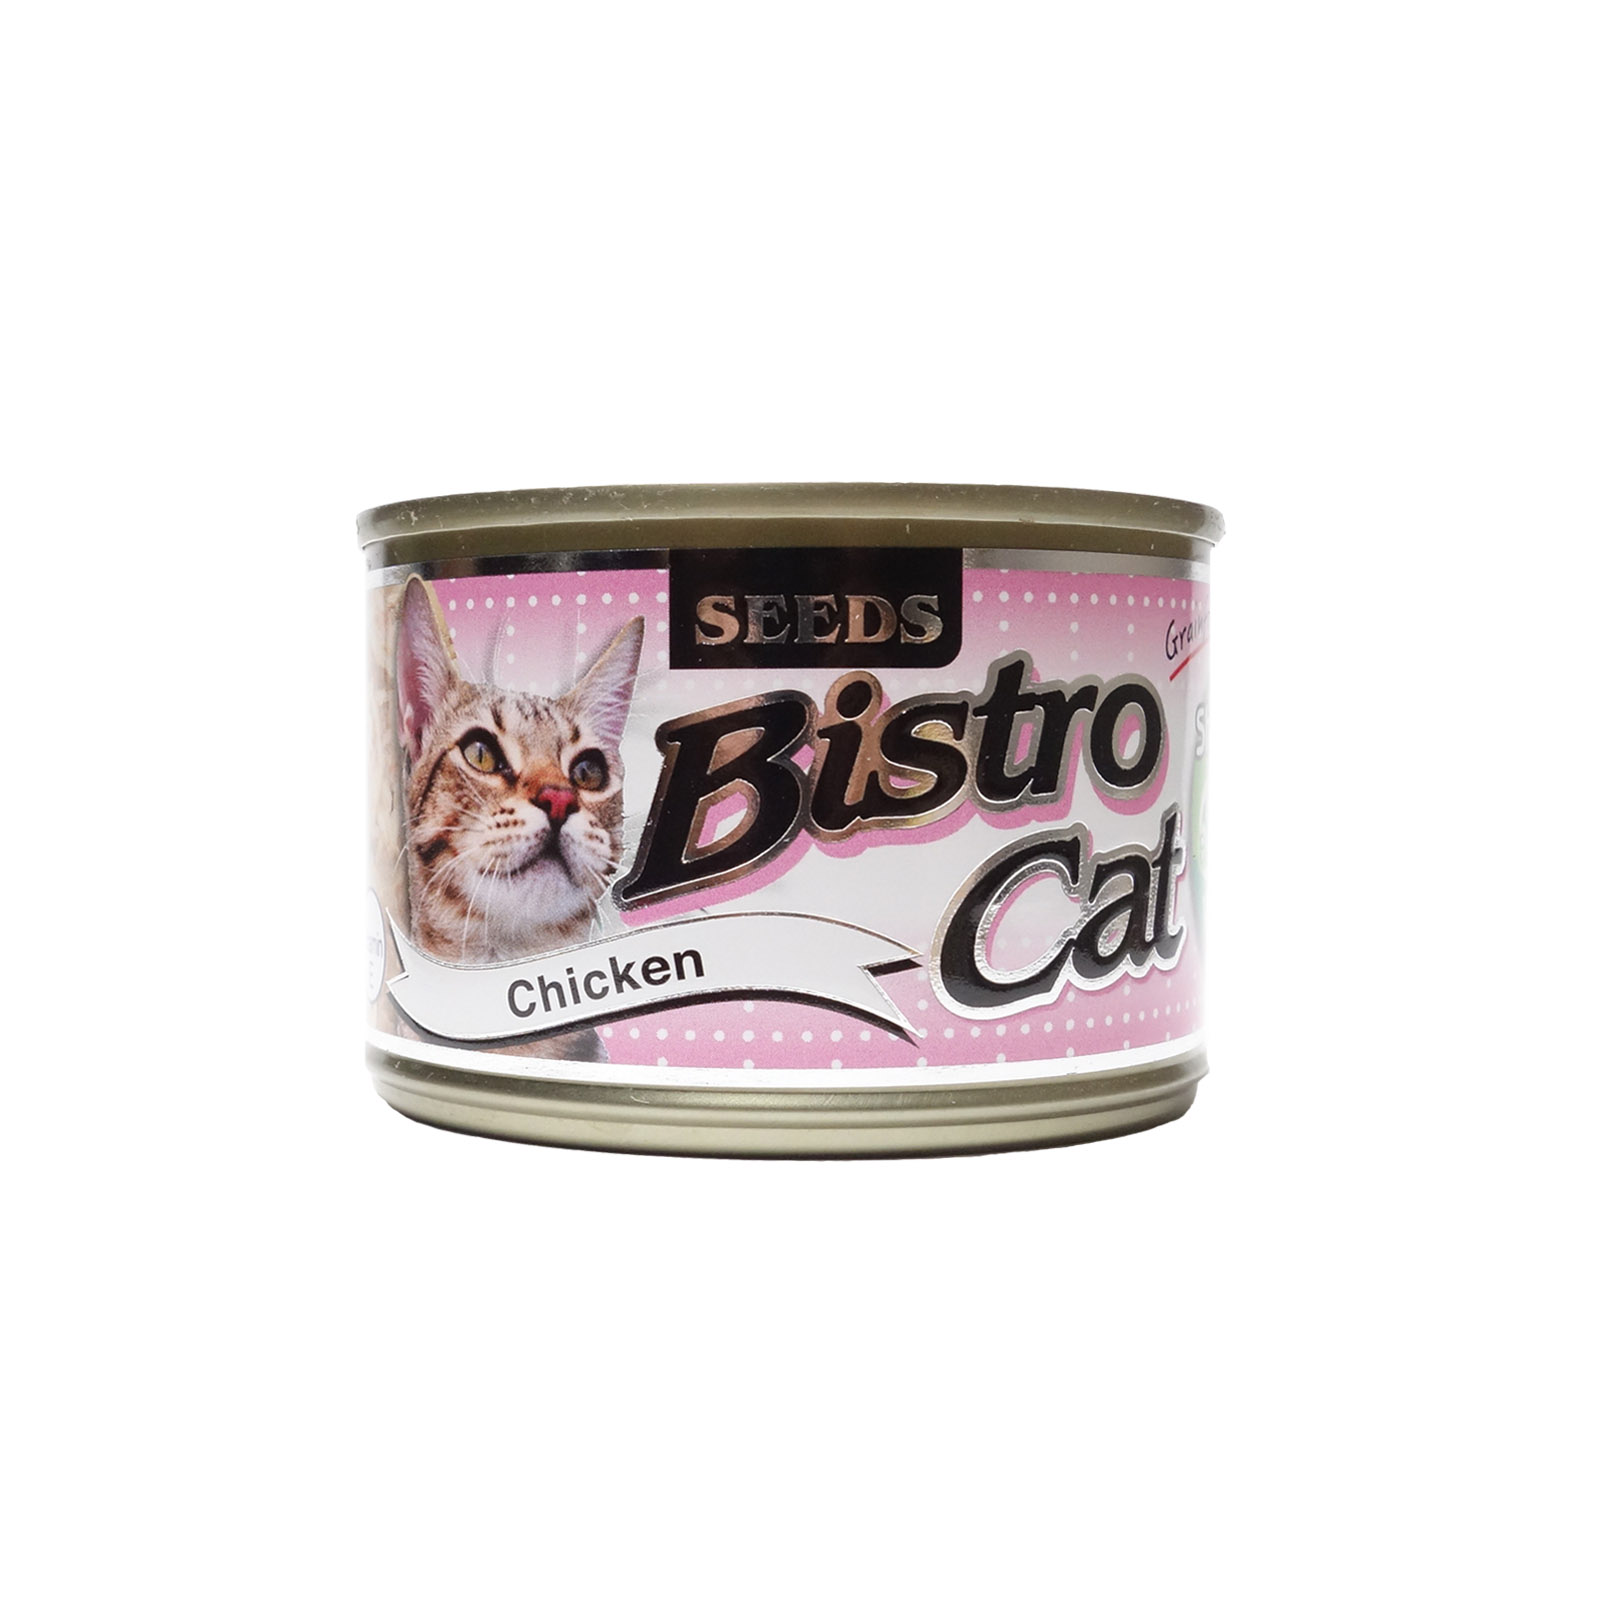 Bistro Cat Chicken 170g